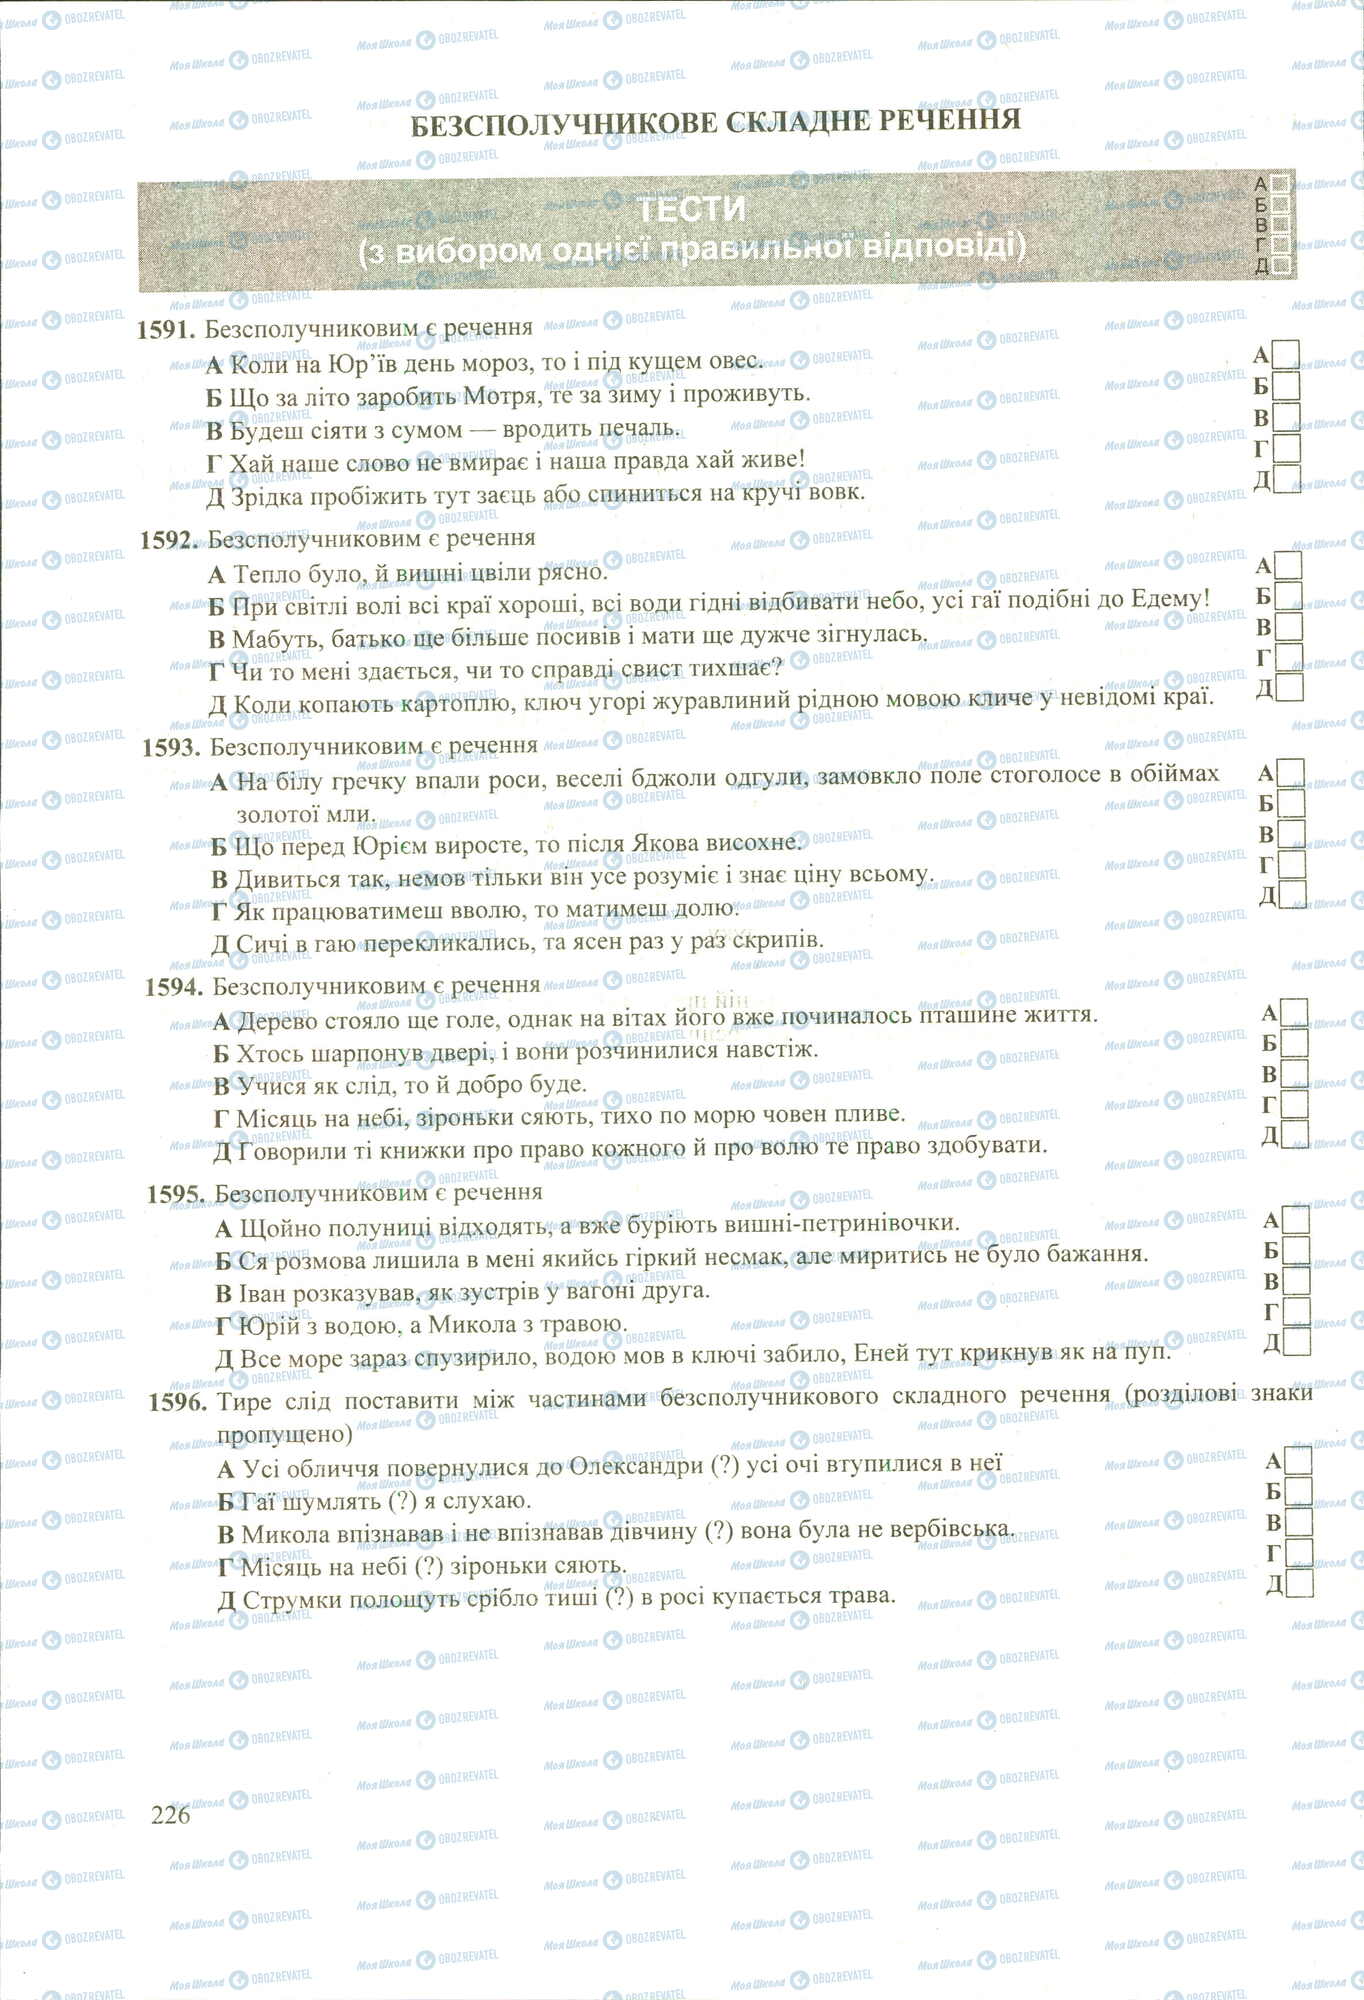 ЗНО Укр мова 11 класс страница 1591-1596